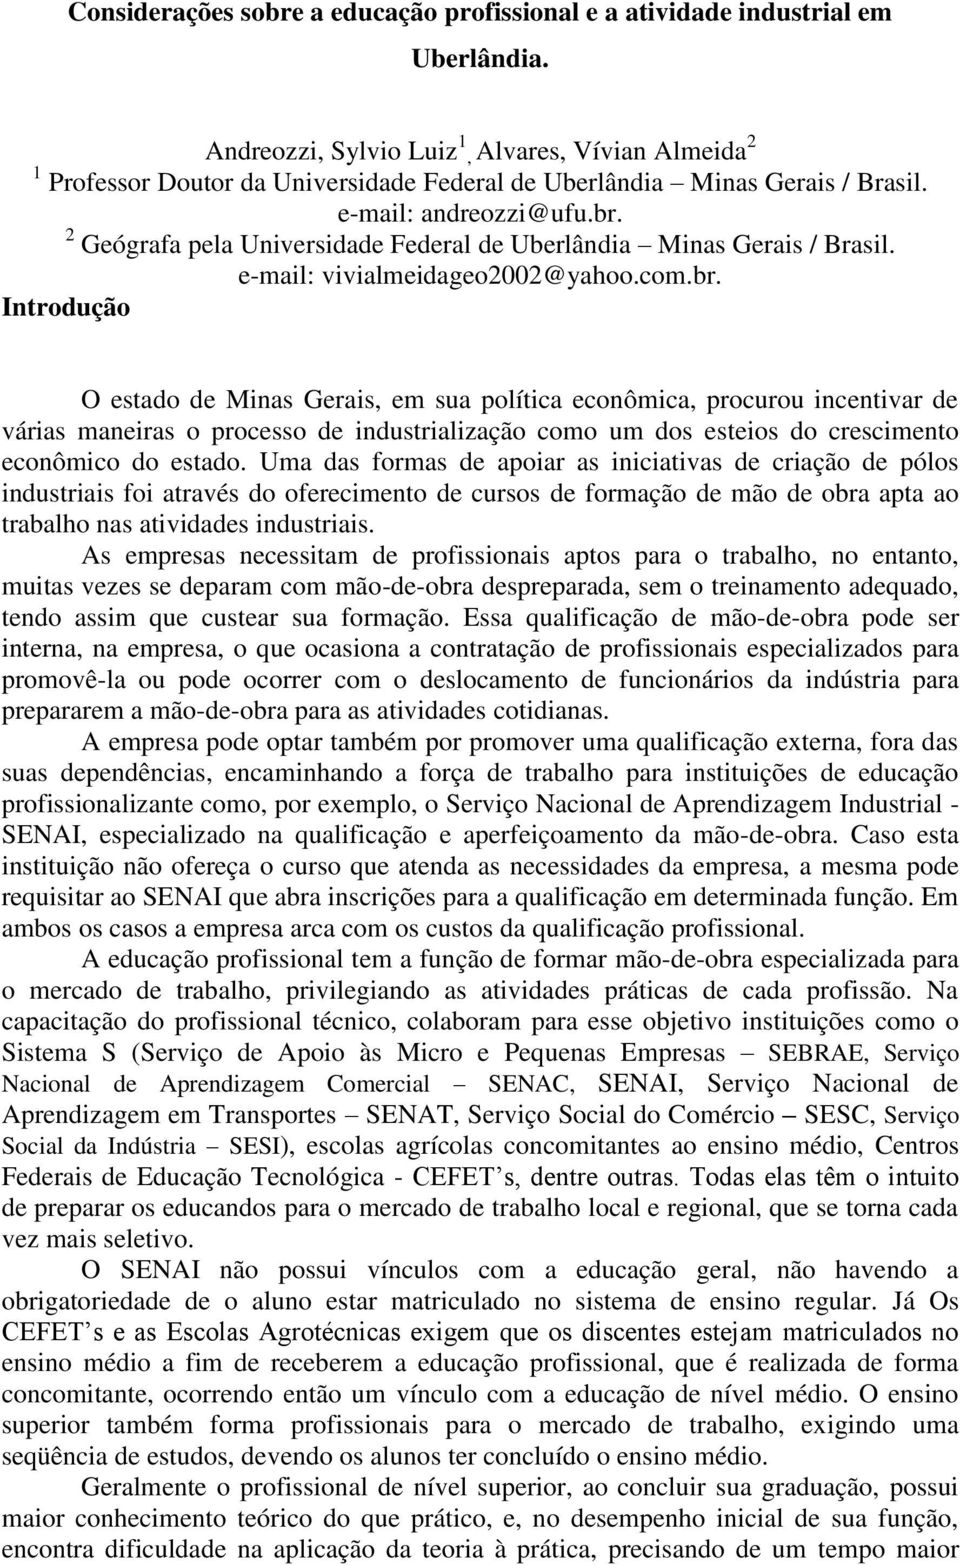 2 Geógrafa pela Universidade Federal de Uberlândia Minas Gerais / Brasil. e-mail: vivialmeidageo2002@yahoo.com.br.